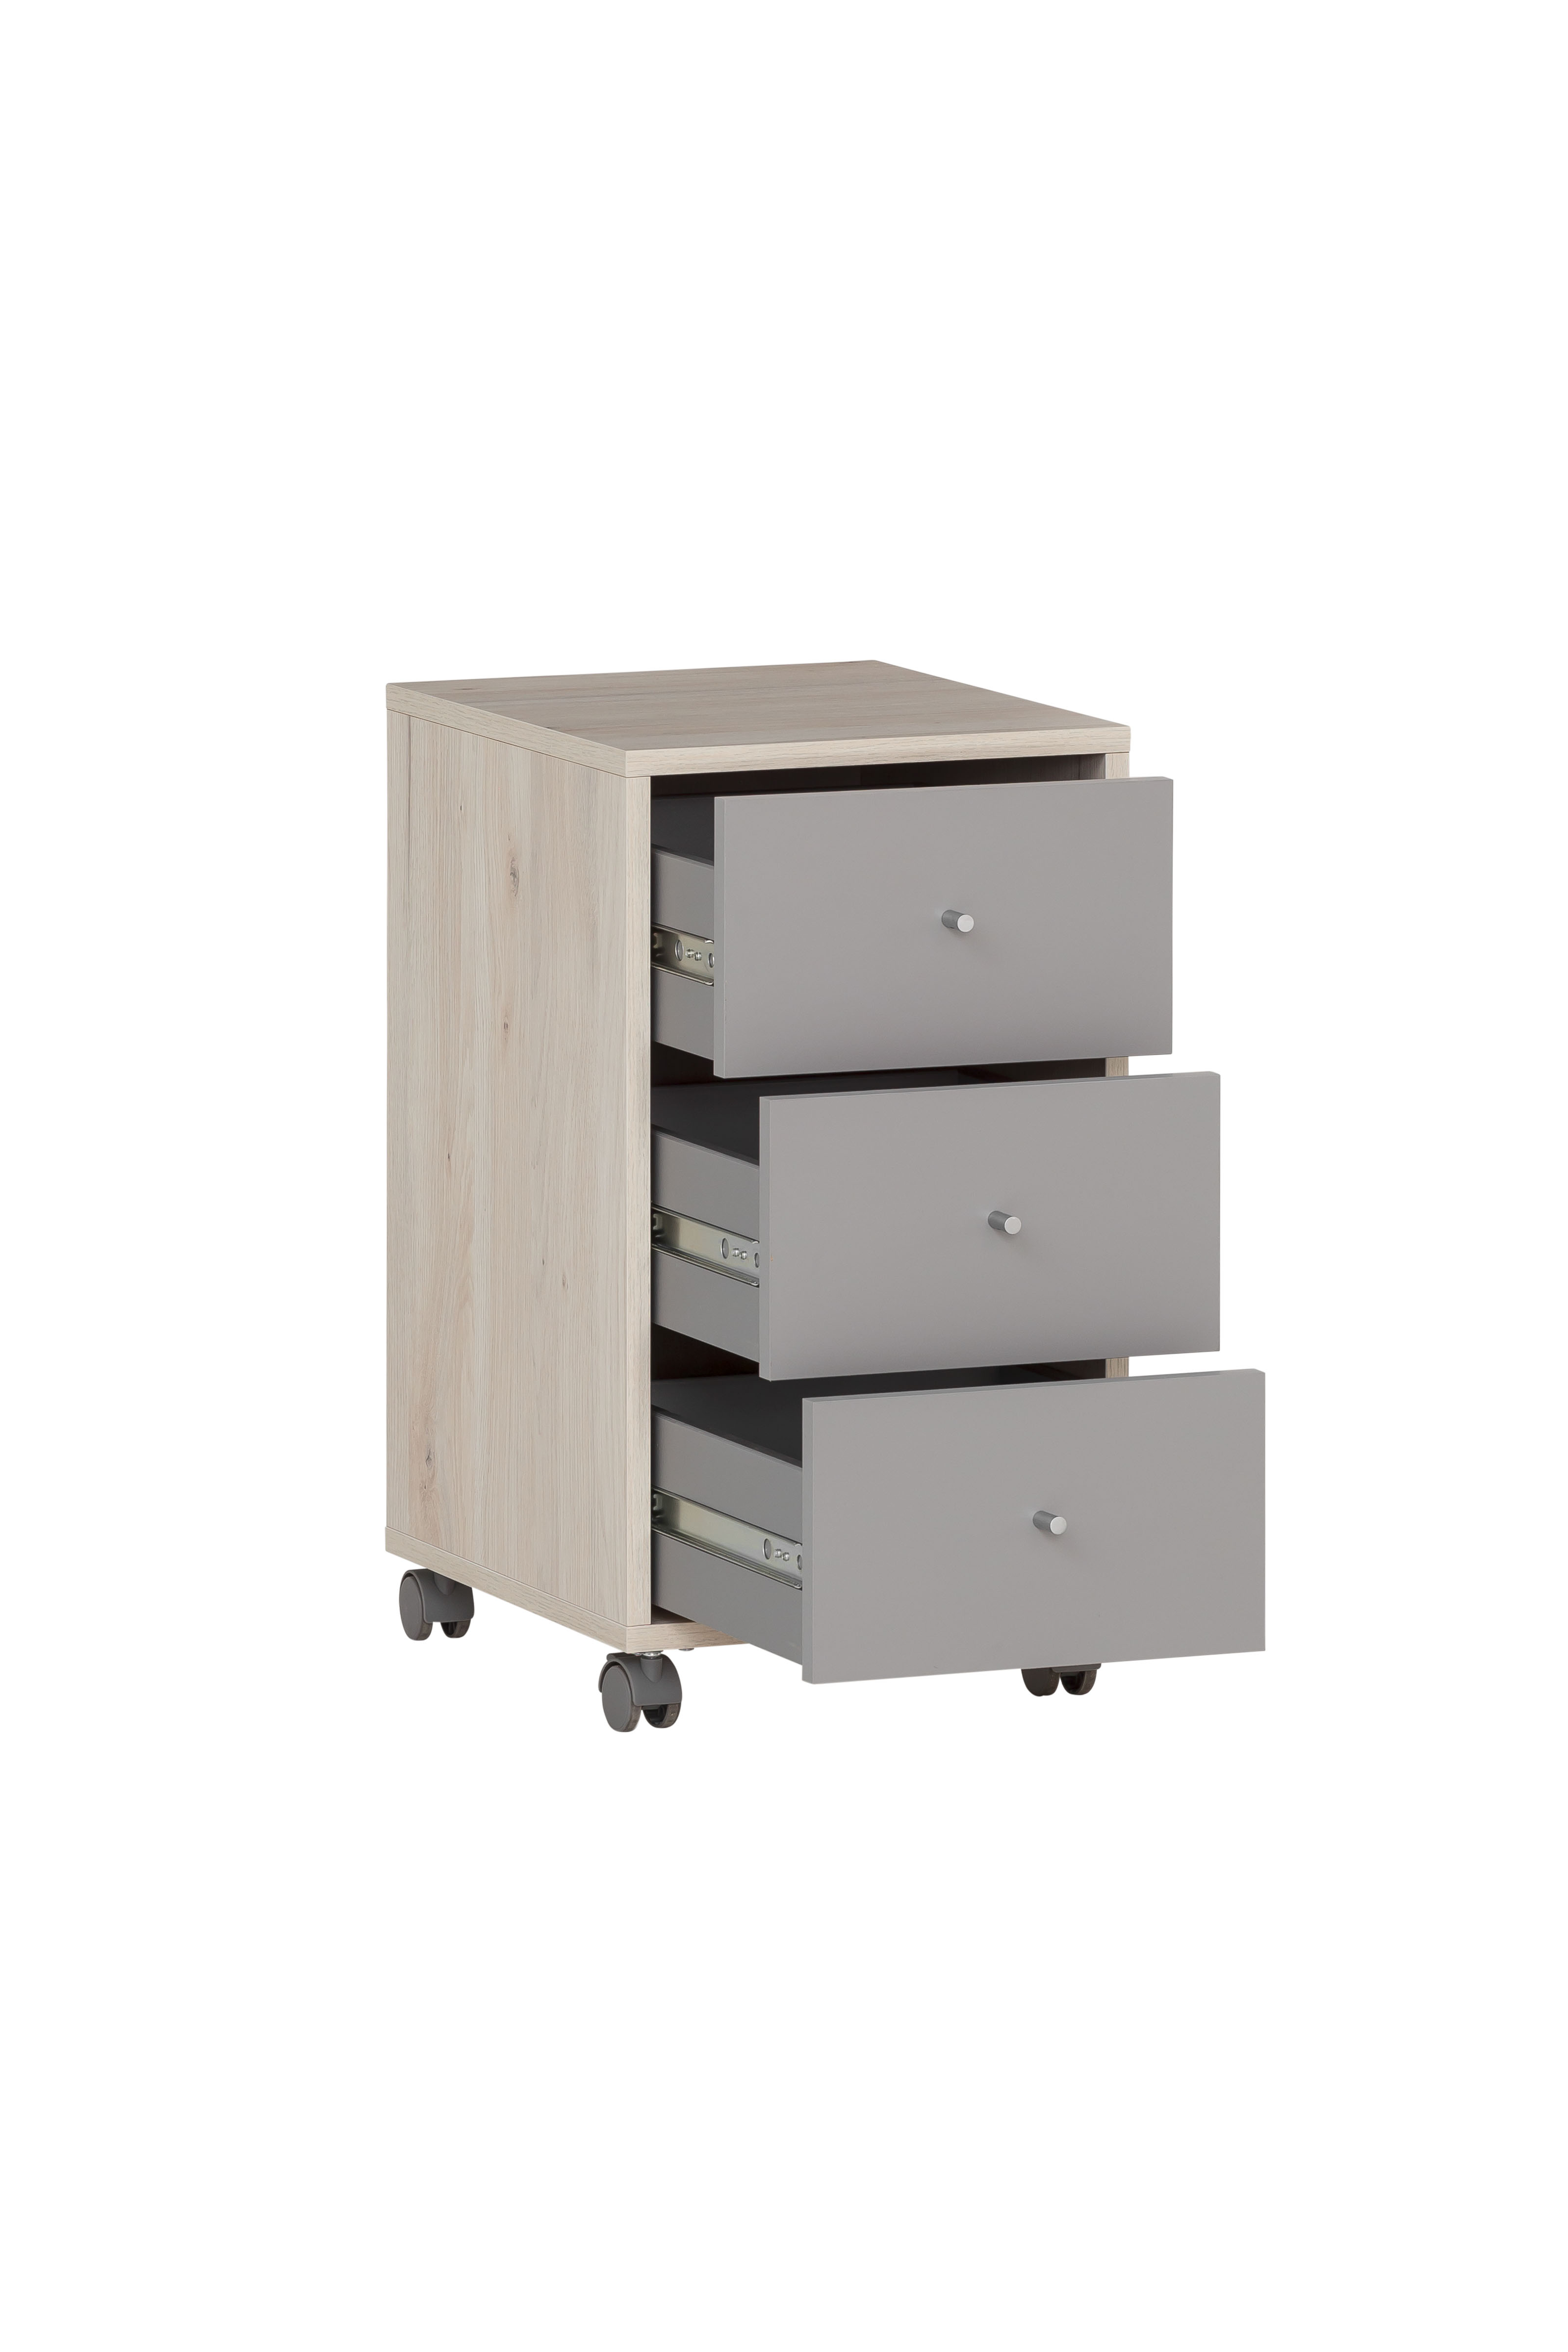 Möbelpartner Rollcontainer Pigeon | HxBxT 59,7x32,6x39cm | 3 Schubladen | Weiß/Grau